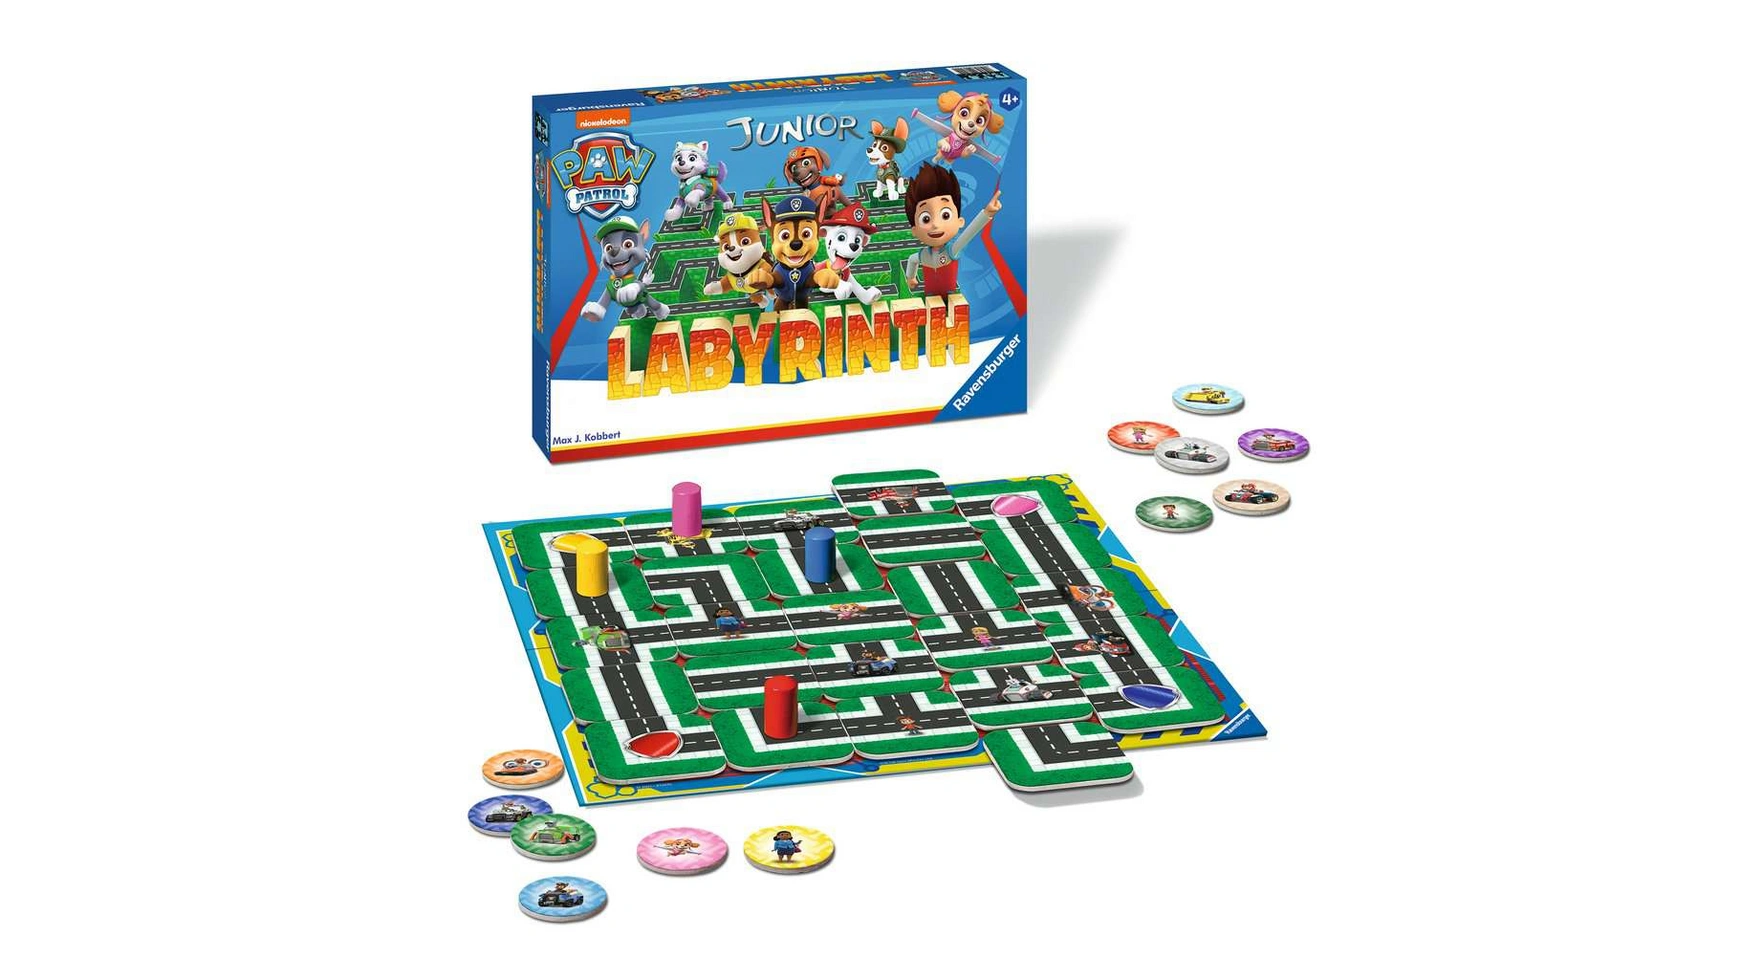 Ravensburger Spiele Paw Patrol Junior Labyrinth, известная настольная игра от Ravensburger в детской версии настольная игра пазл щенячий патруль деревянная со звуками